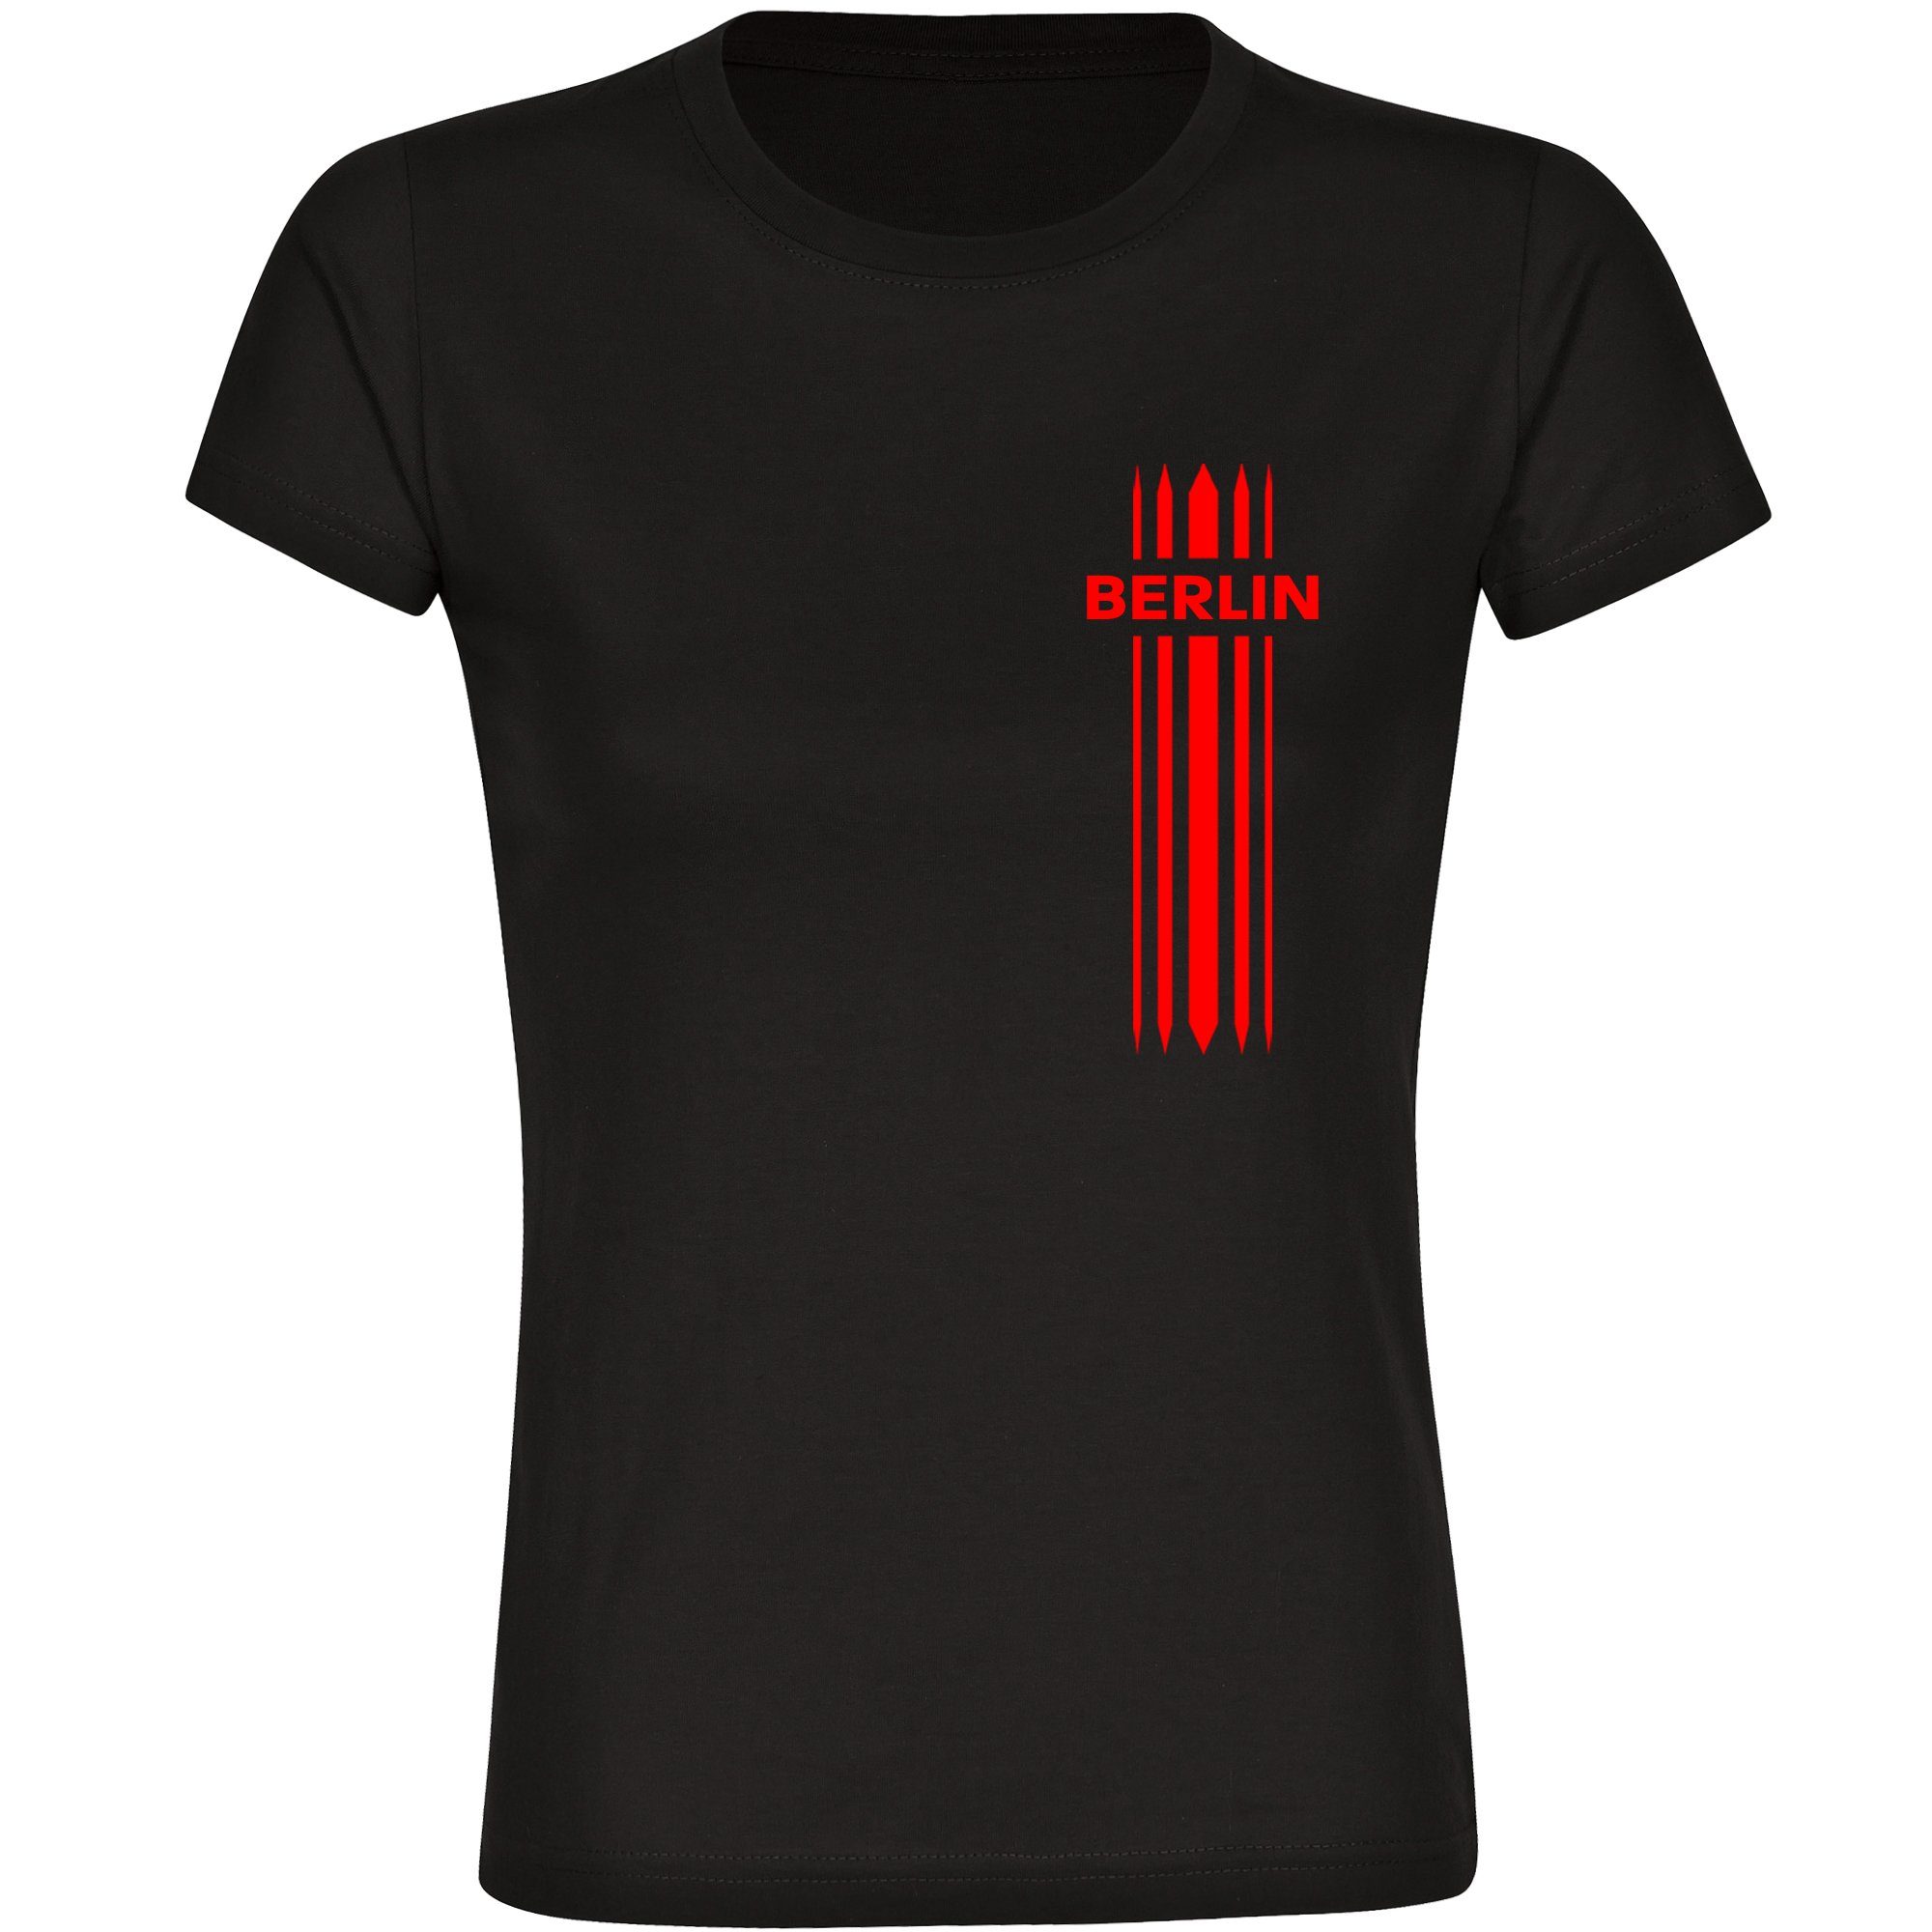 multifanshop T-Shirt Damen Berlin rot - Streifen - Frauen